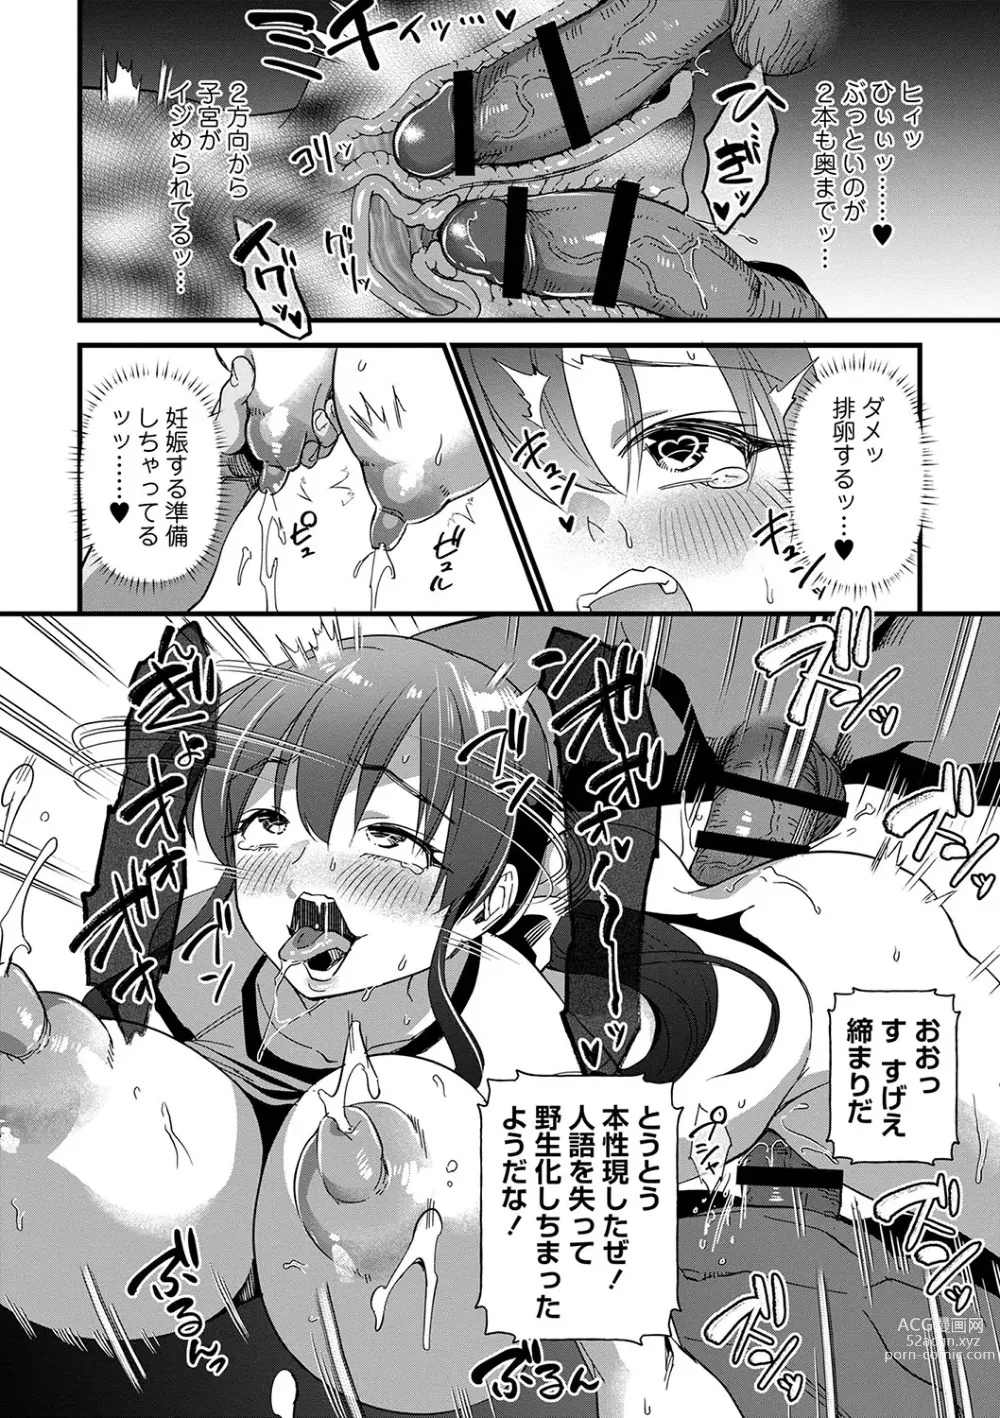 Page 29 of manga Nikurin mesu ochi akume jigoku